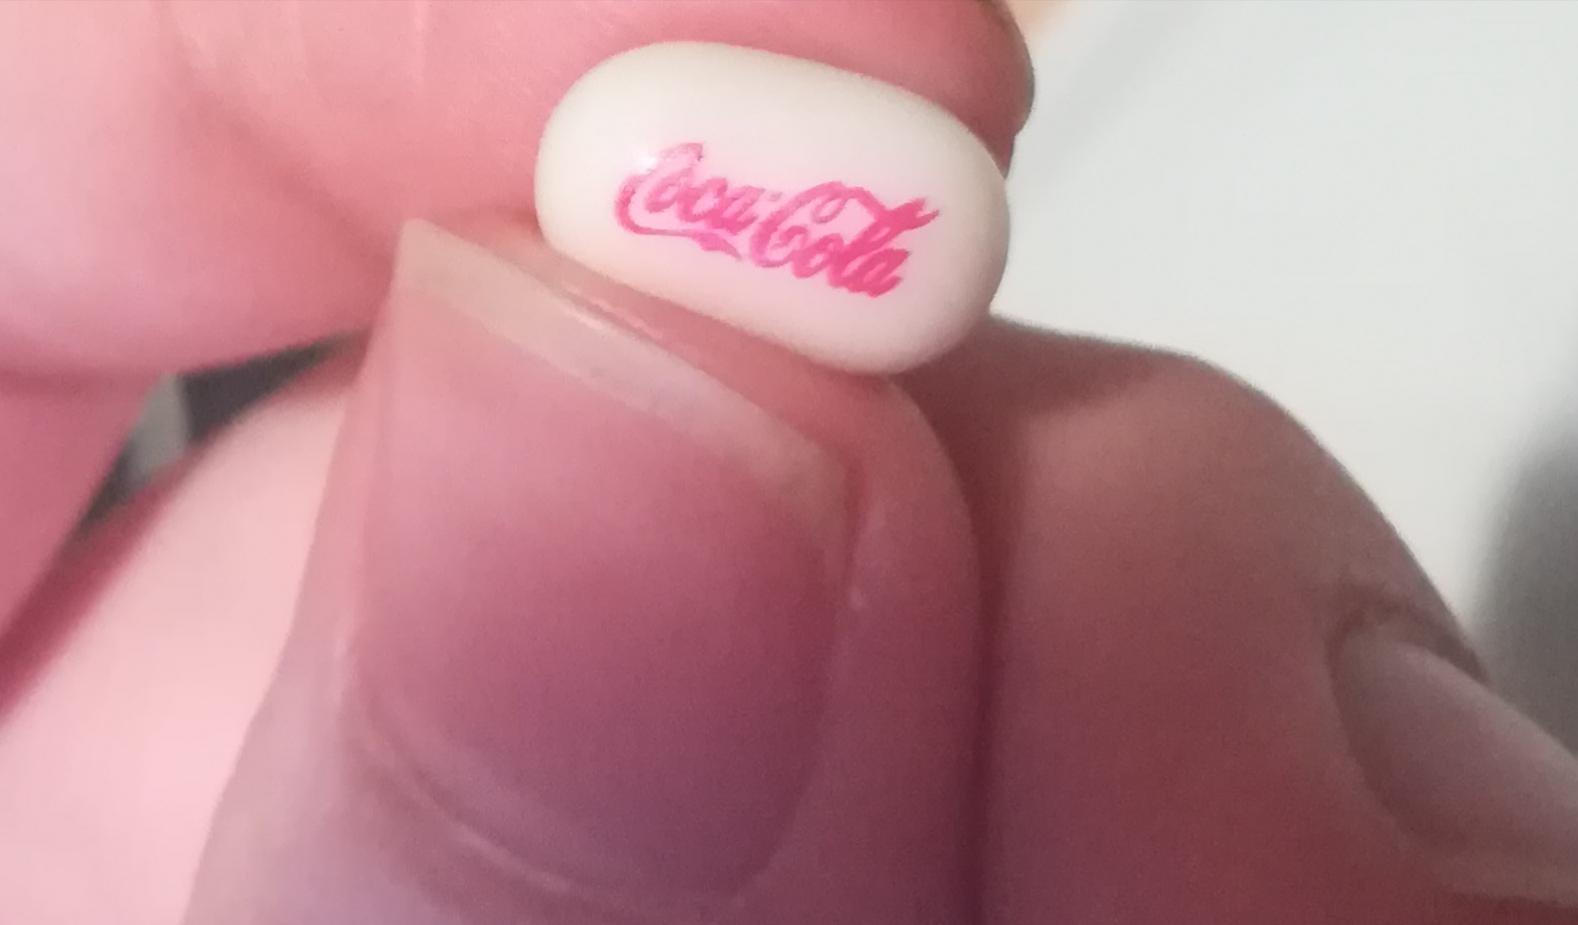 Limited edition Coca-Cola Tic-tac